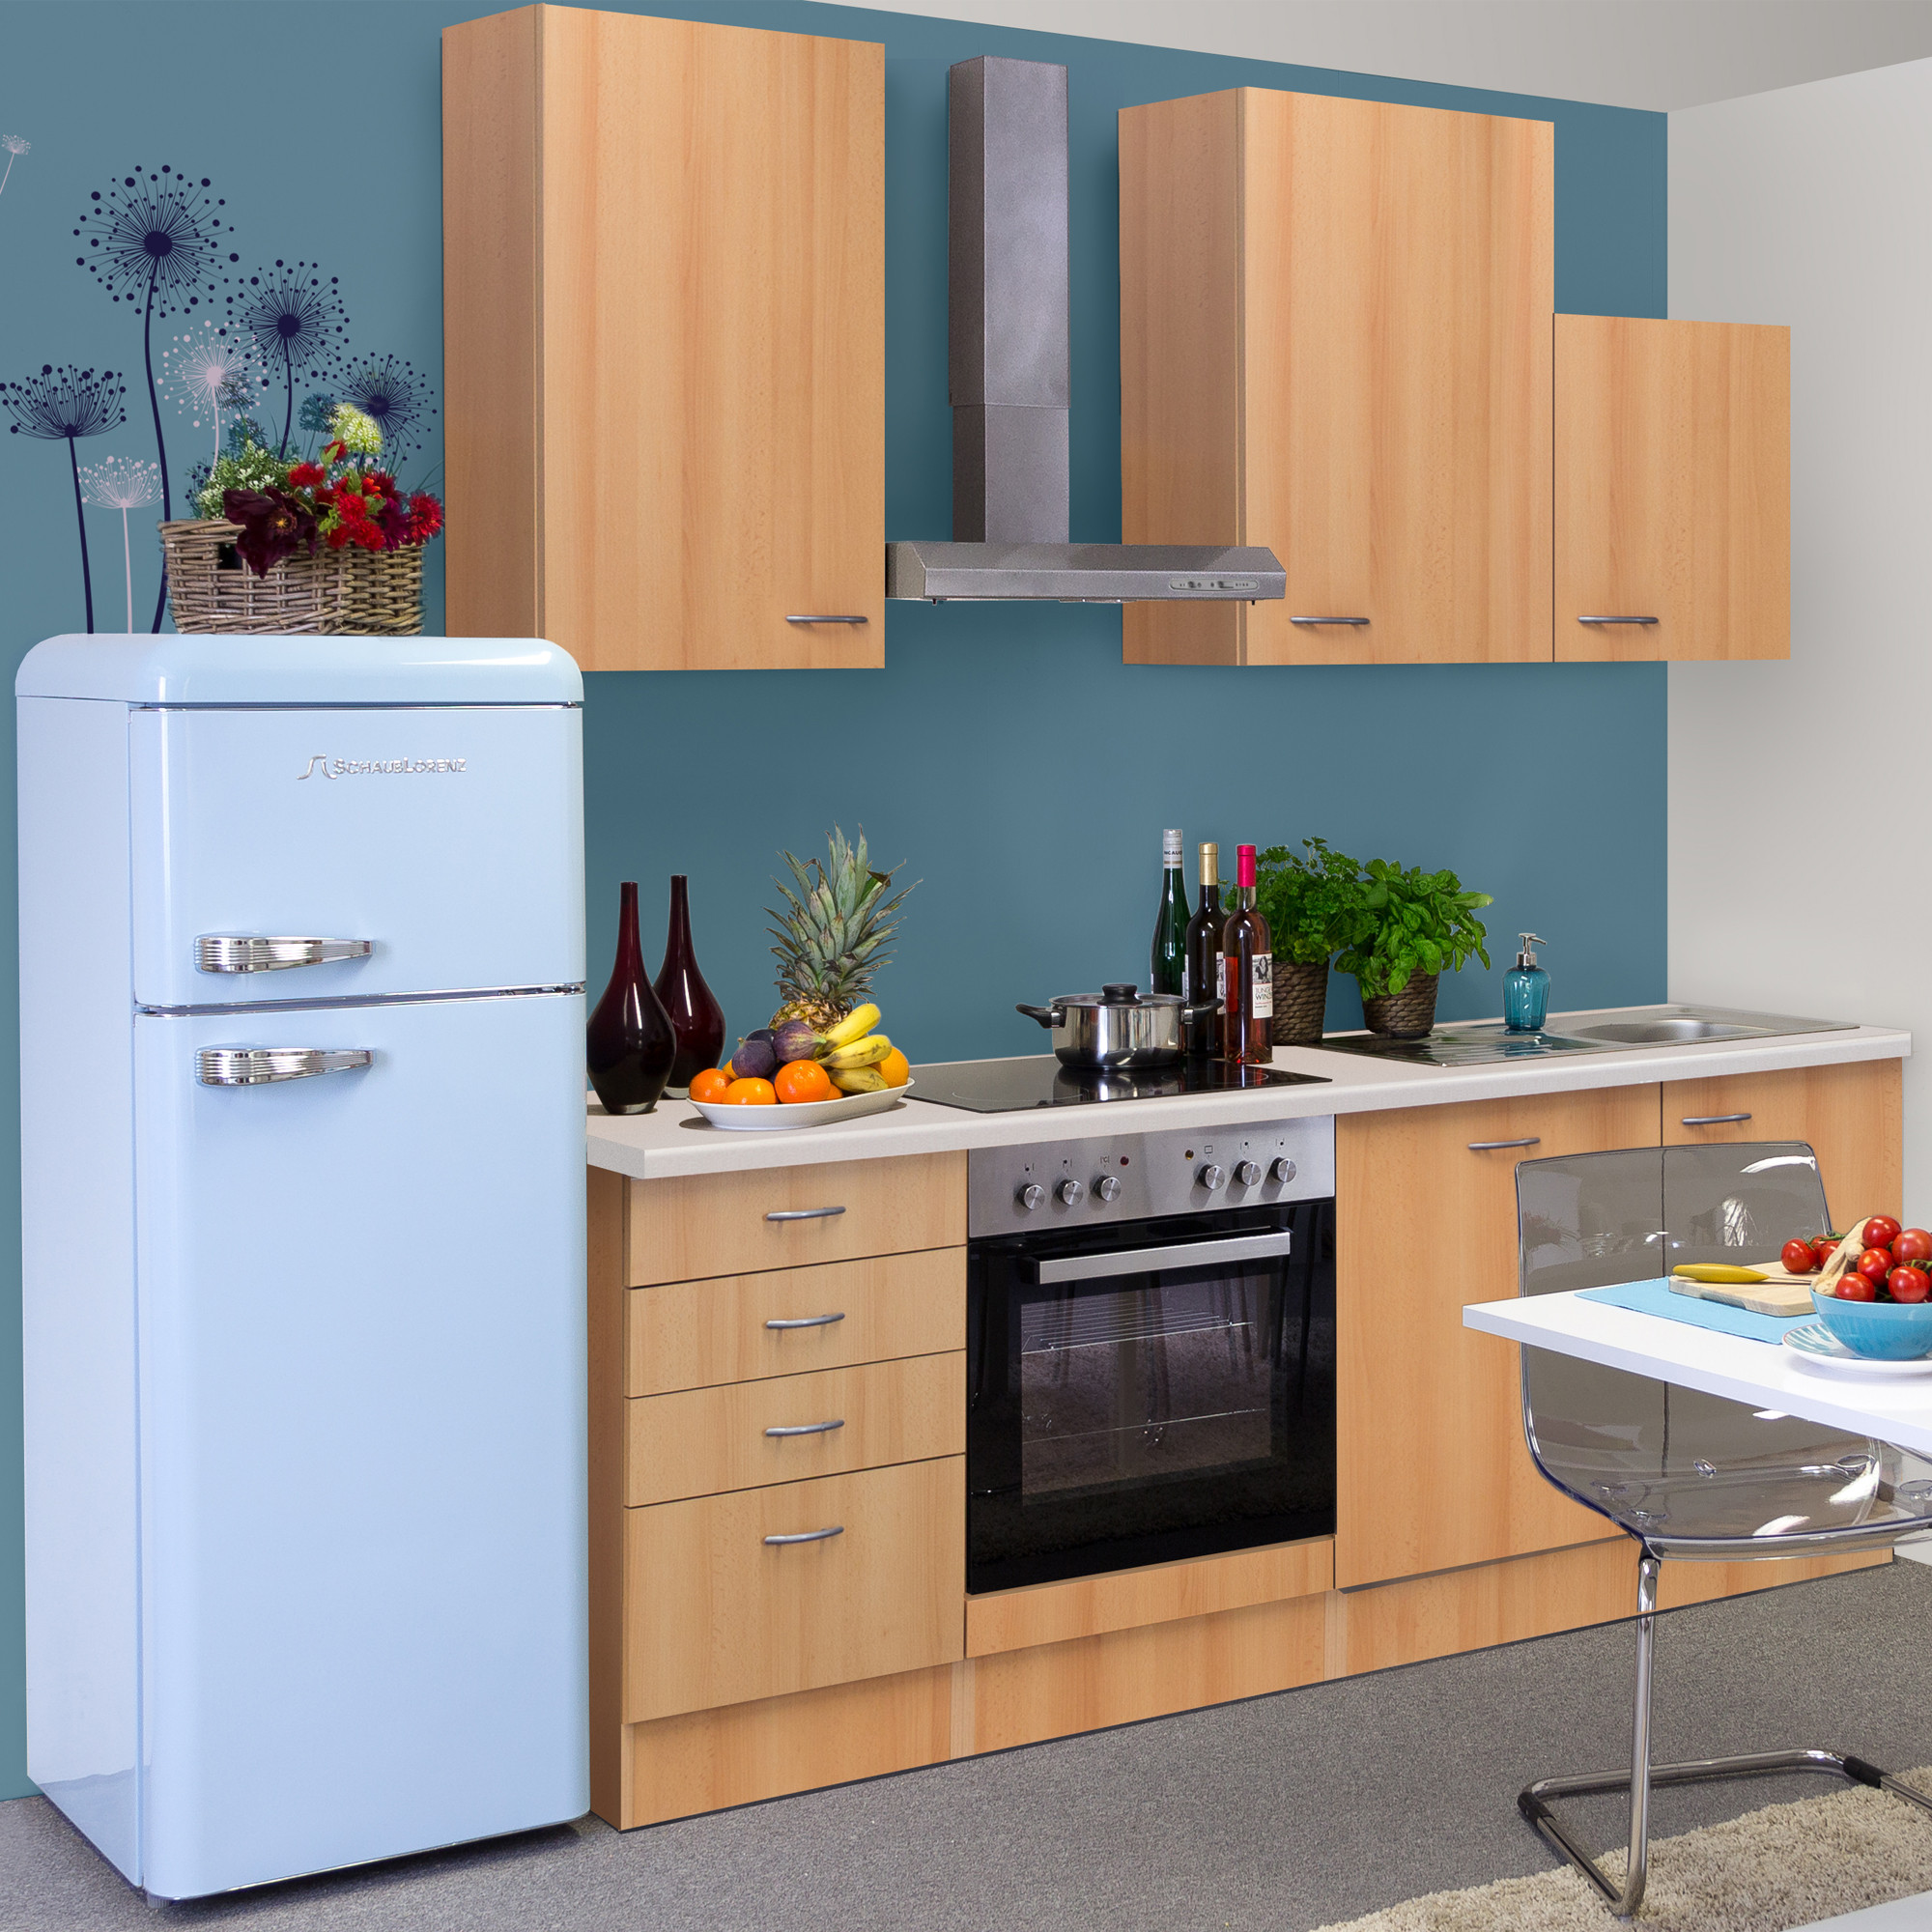 Küche Mit E Geräten
 Küchenzeile NANO Küche mit E Geräten 12 teilig